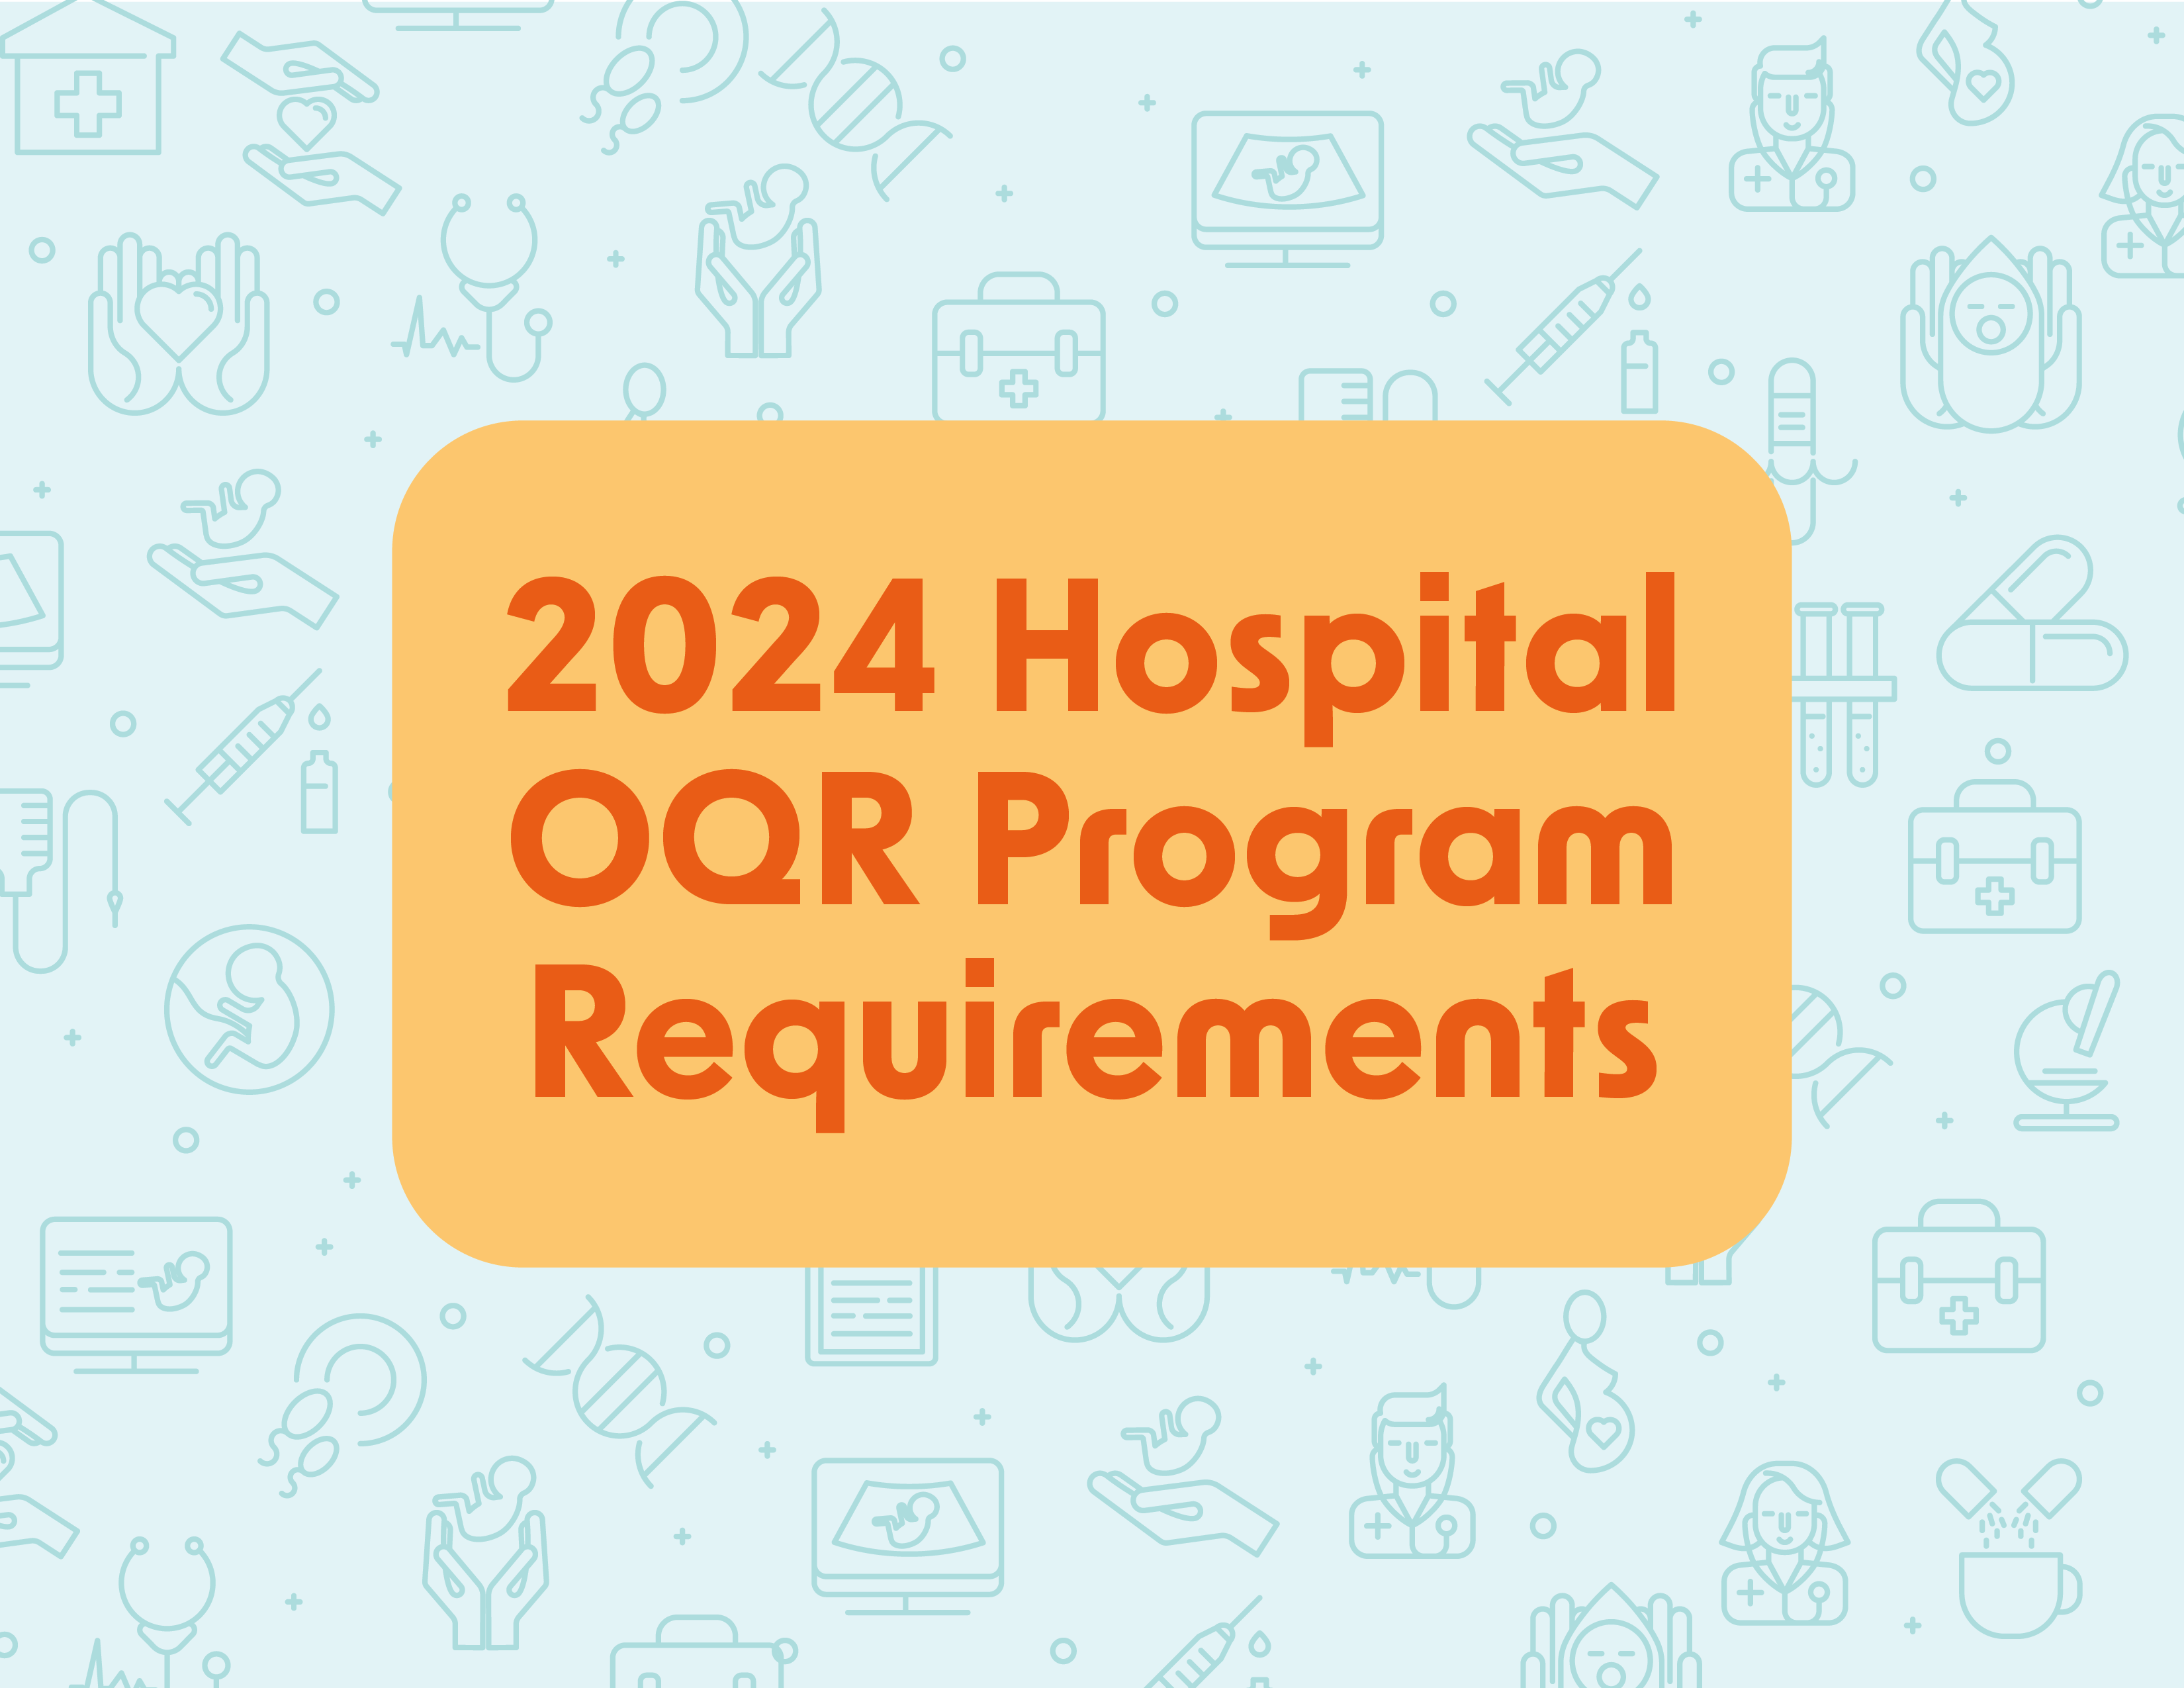 2024 Hospital OQR Program Requirements